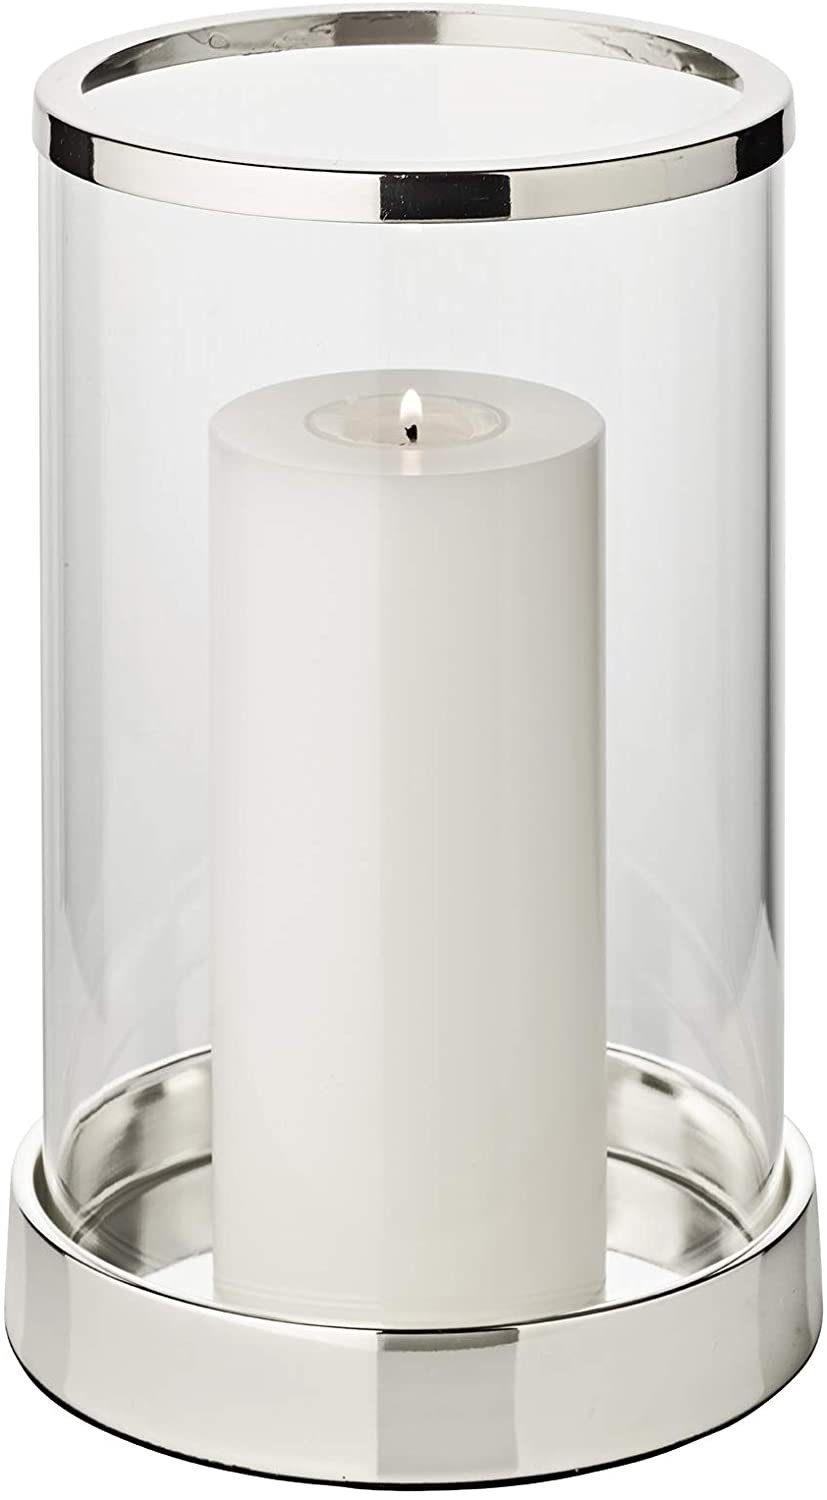 EDZARD Windlicht Sanremo, Kerzenhalter aus Glas, Kerzenleuchter für Stumpenkerzen, Laterne versilbert und anlaufgeschützt, Höhe 26 cm, Ø 16 cm